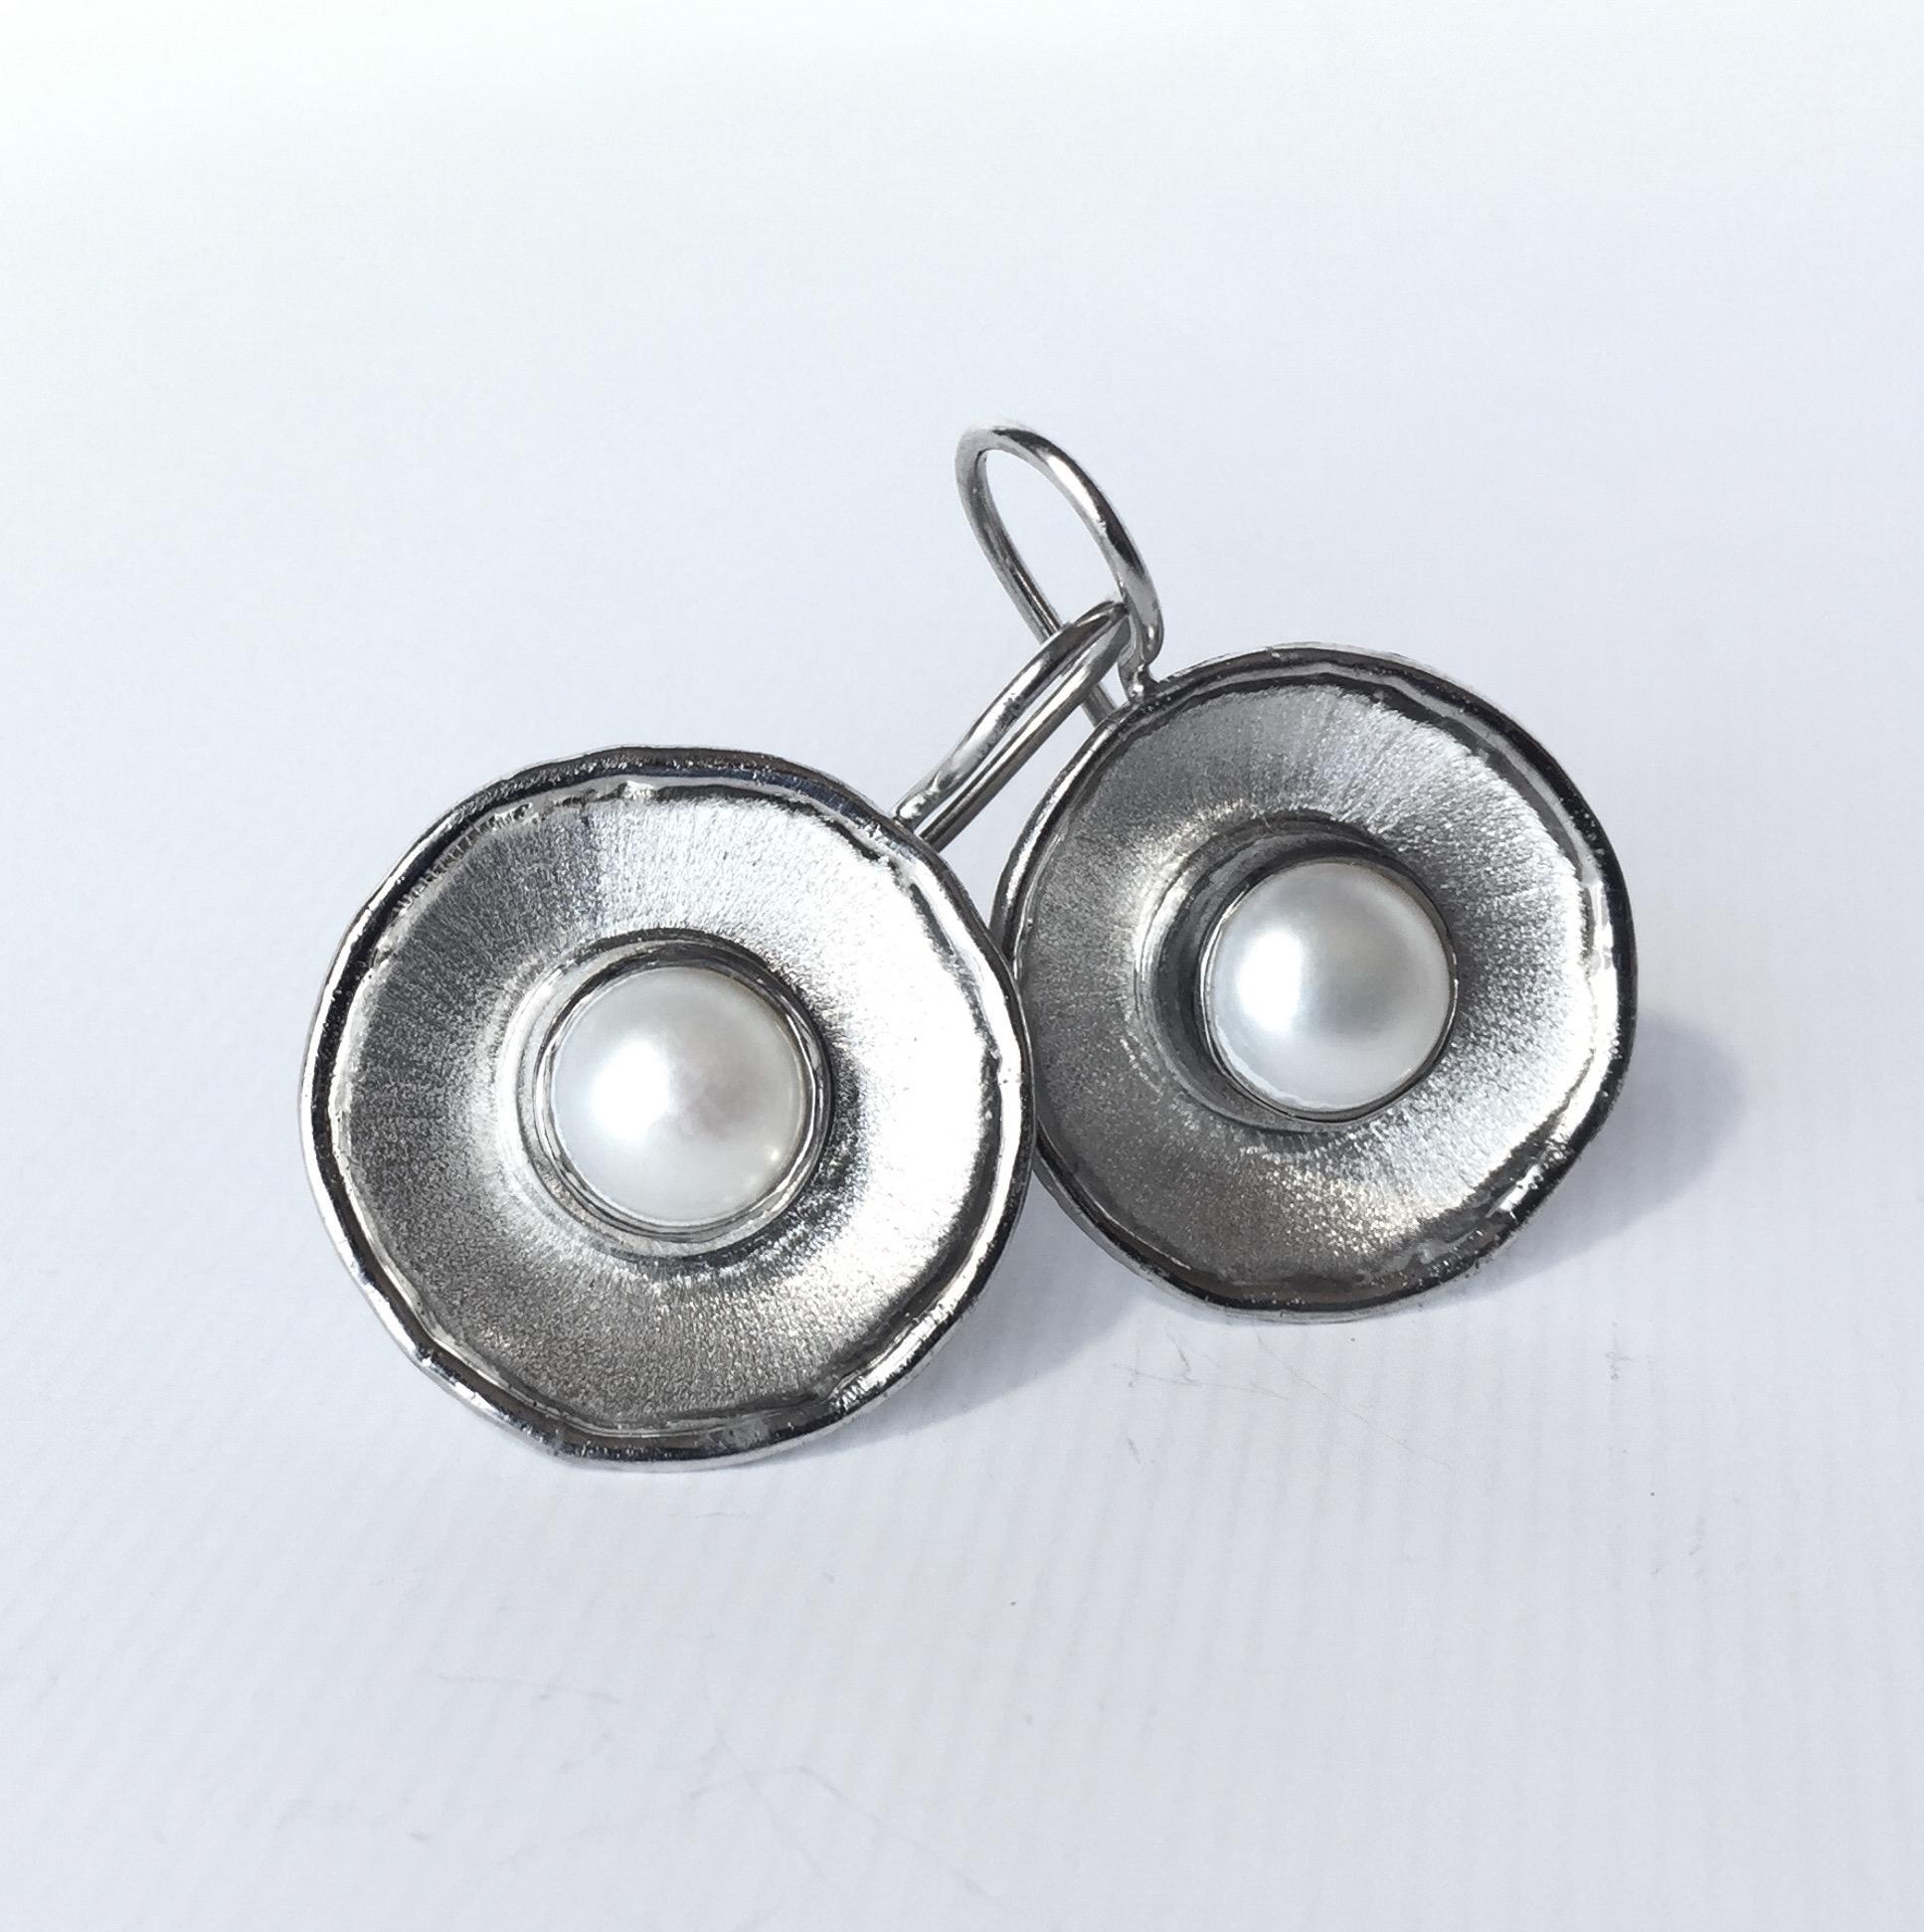 Diese handgefertigten Ohrringe aus der Ammos-Kollektion von Yianni Creations sind aus feinem Silber gefertigt und mit Palladium überzogen, um den Elementen zu widerstehen. Jeder Ohrring besteht aus einer 7 mm großen runden Süßwasserperle. Diese